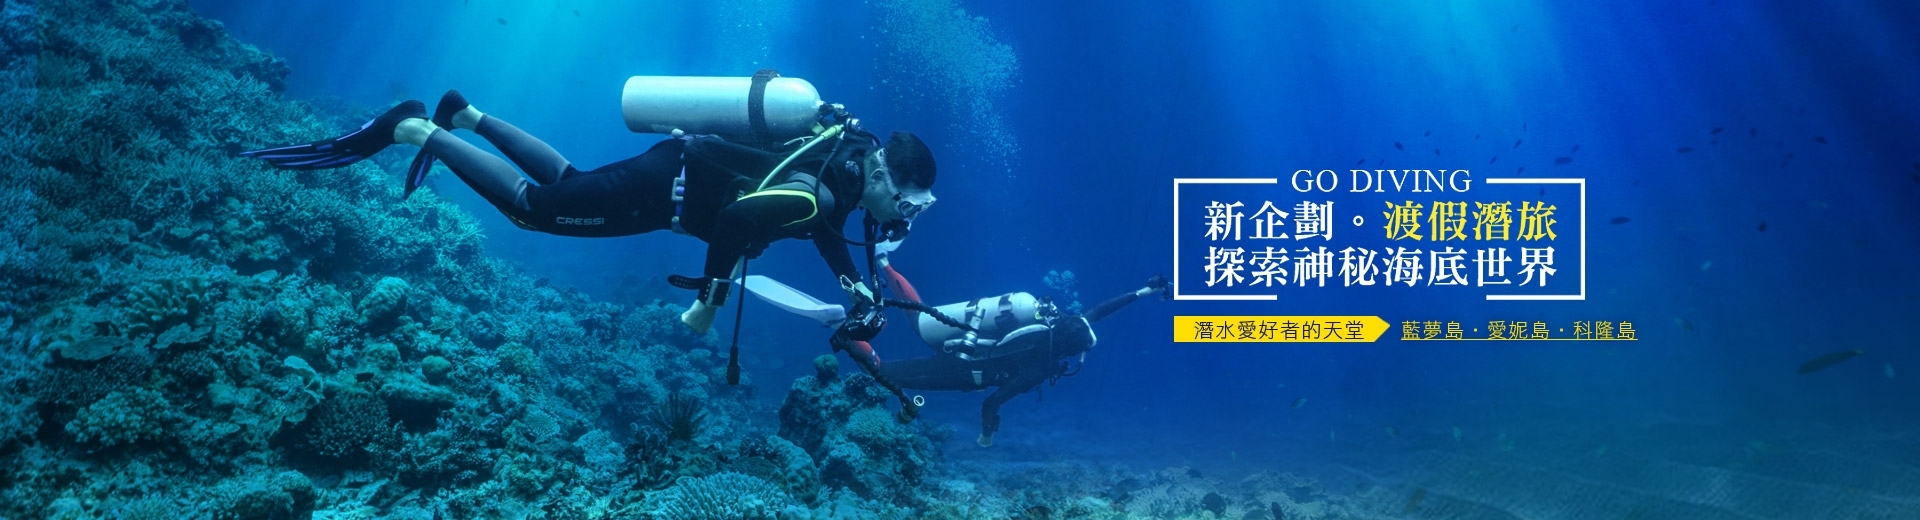 鈦美旅行社-巴里島、愛妮島、科隆島潛水旅遊推薦